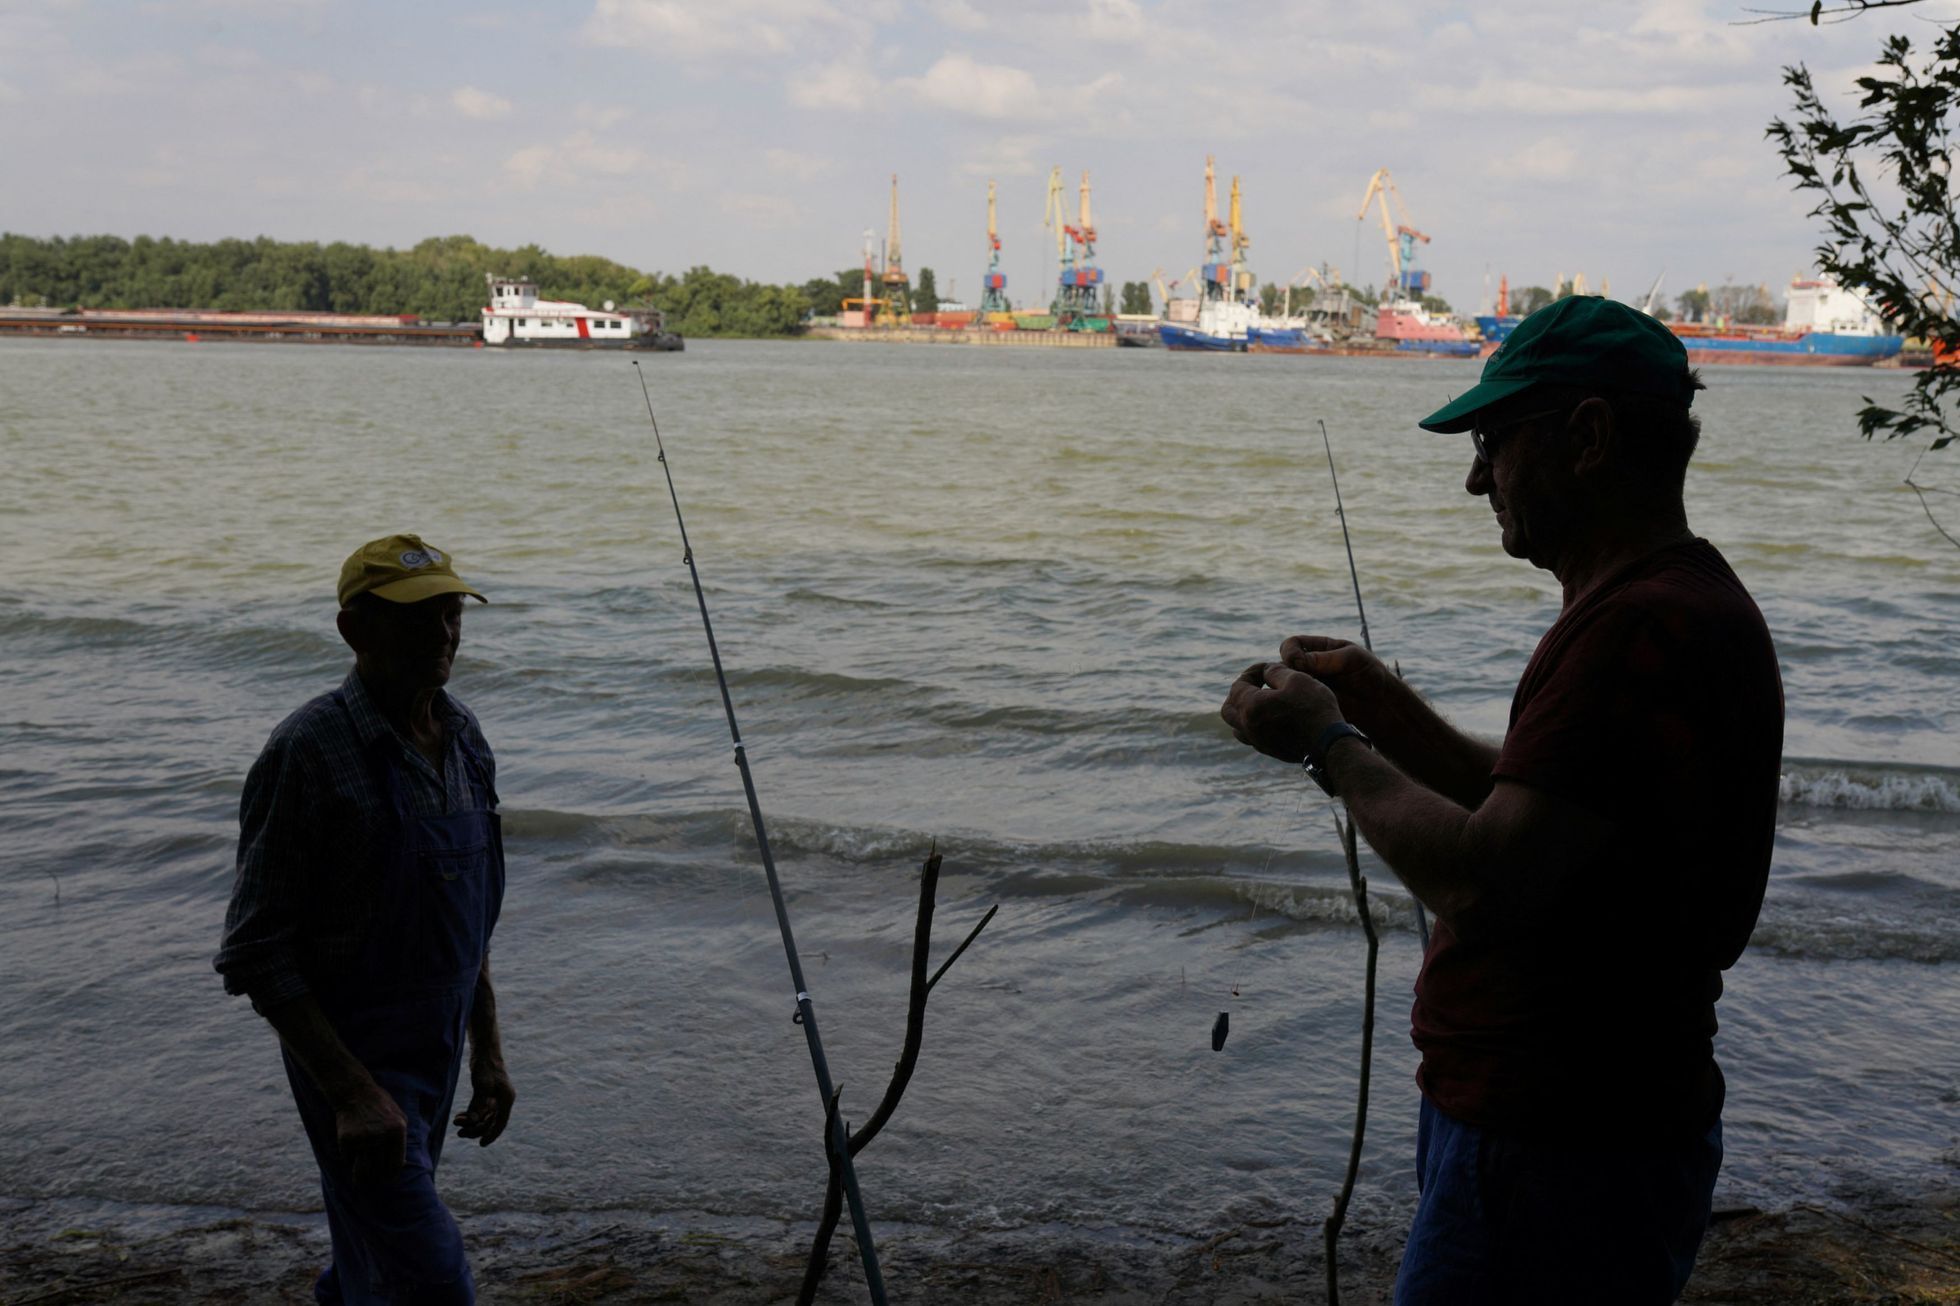 Rybáři ve městě Plauru, na rumunské straně Dunaje. Na opačném břehu je vidět ukrajinský přístav Izmajil, na který Rusové útočí.